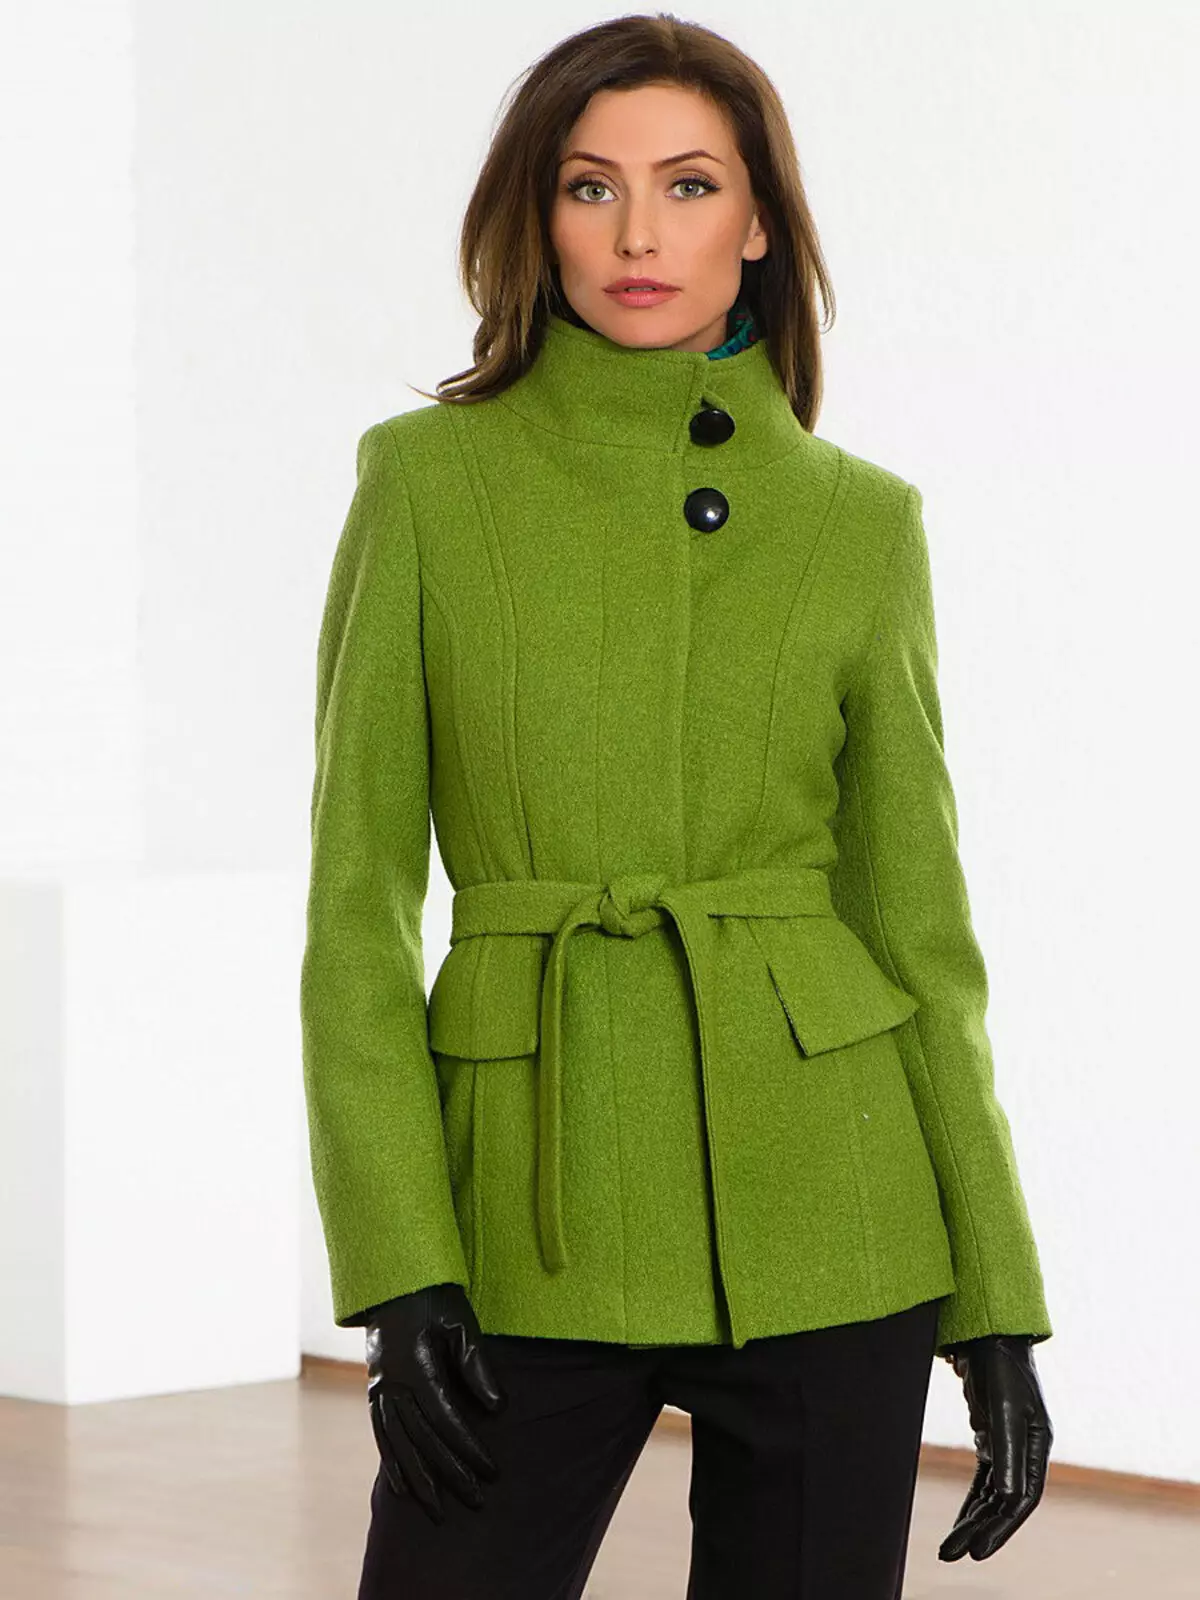 Žena kabát jaro 2021 (356 fotek): od ruských výrobců, modelů, stylů a stylů, prošívaných, krátkých, tlumení, kůže 623_235